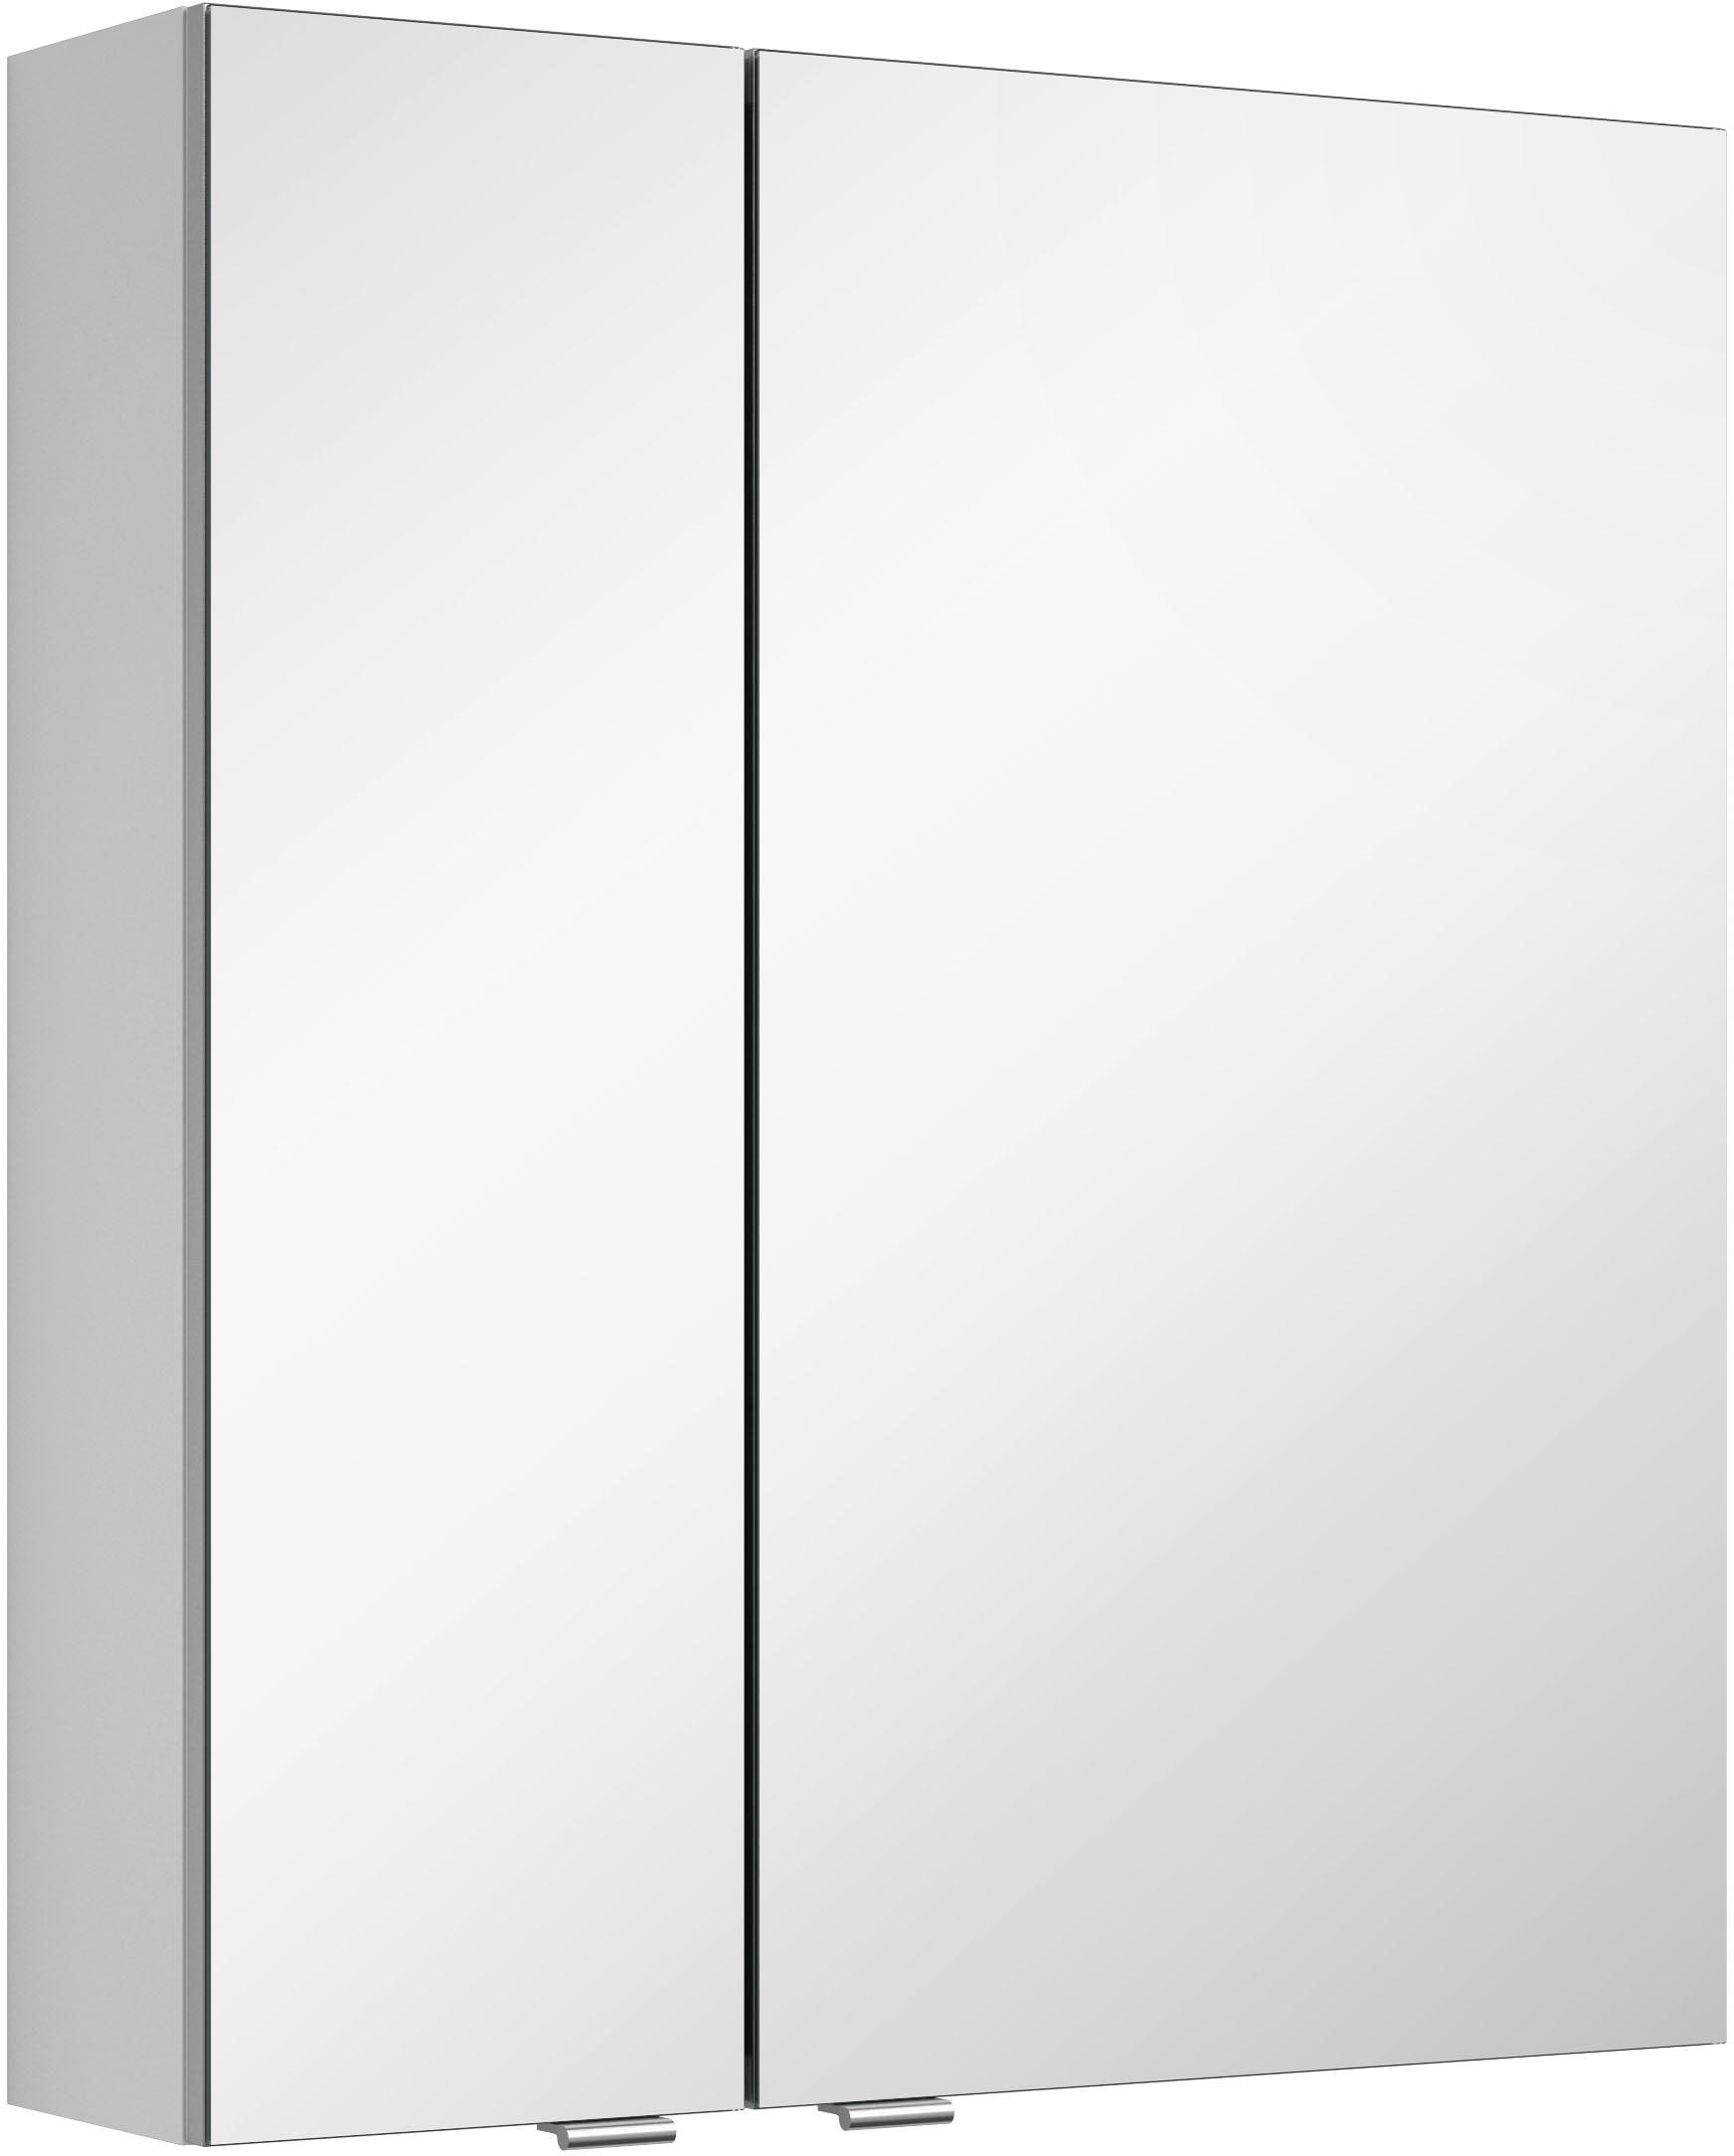 MARLIN doppelseitig »3980«, Garantie mit Spiegelschrank mit vormontiert verspiegelten Jahren 3 XXL Türen,